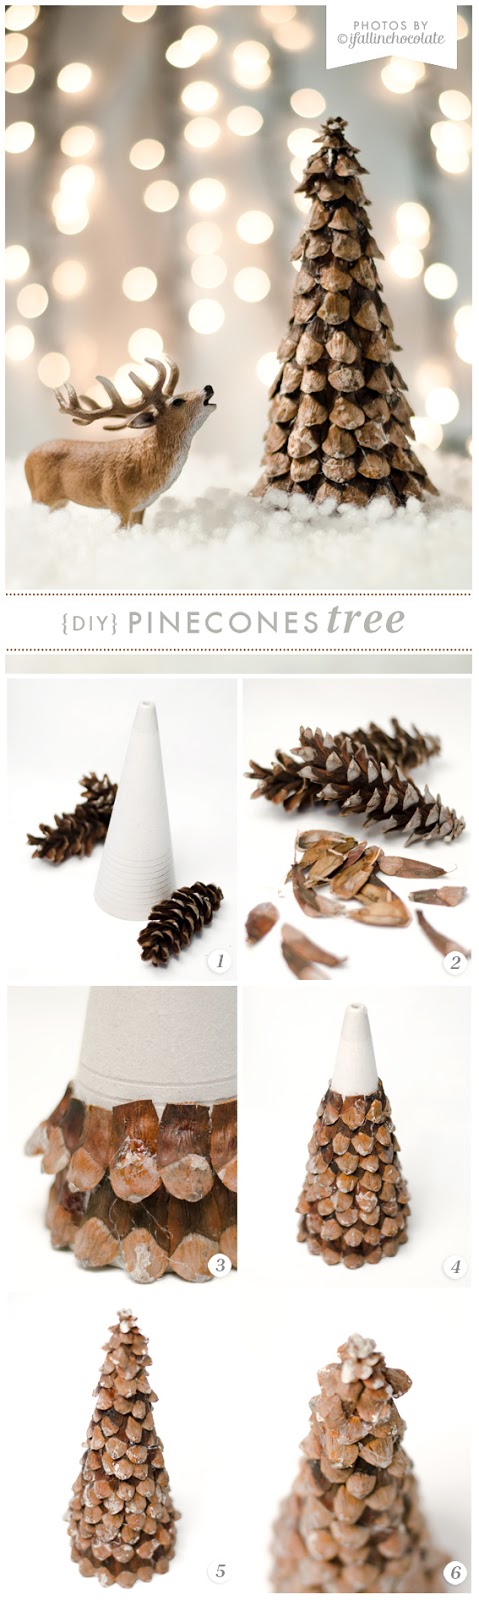 DIY_Pinecone-tree_tutorial